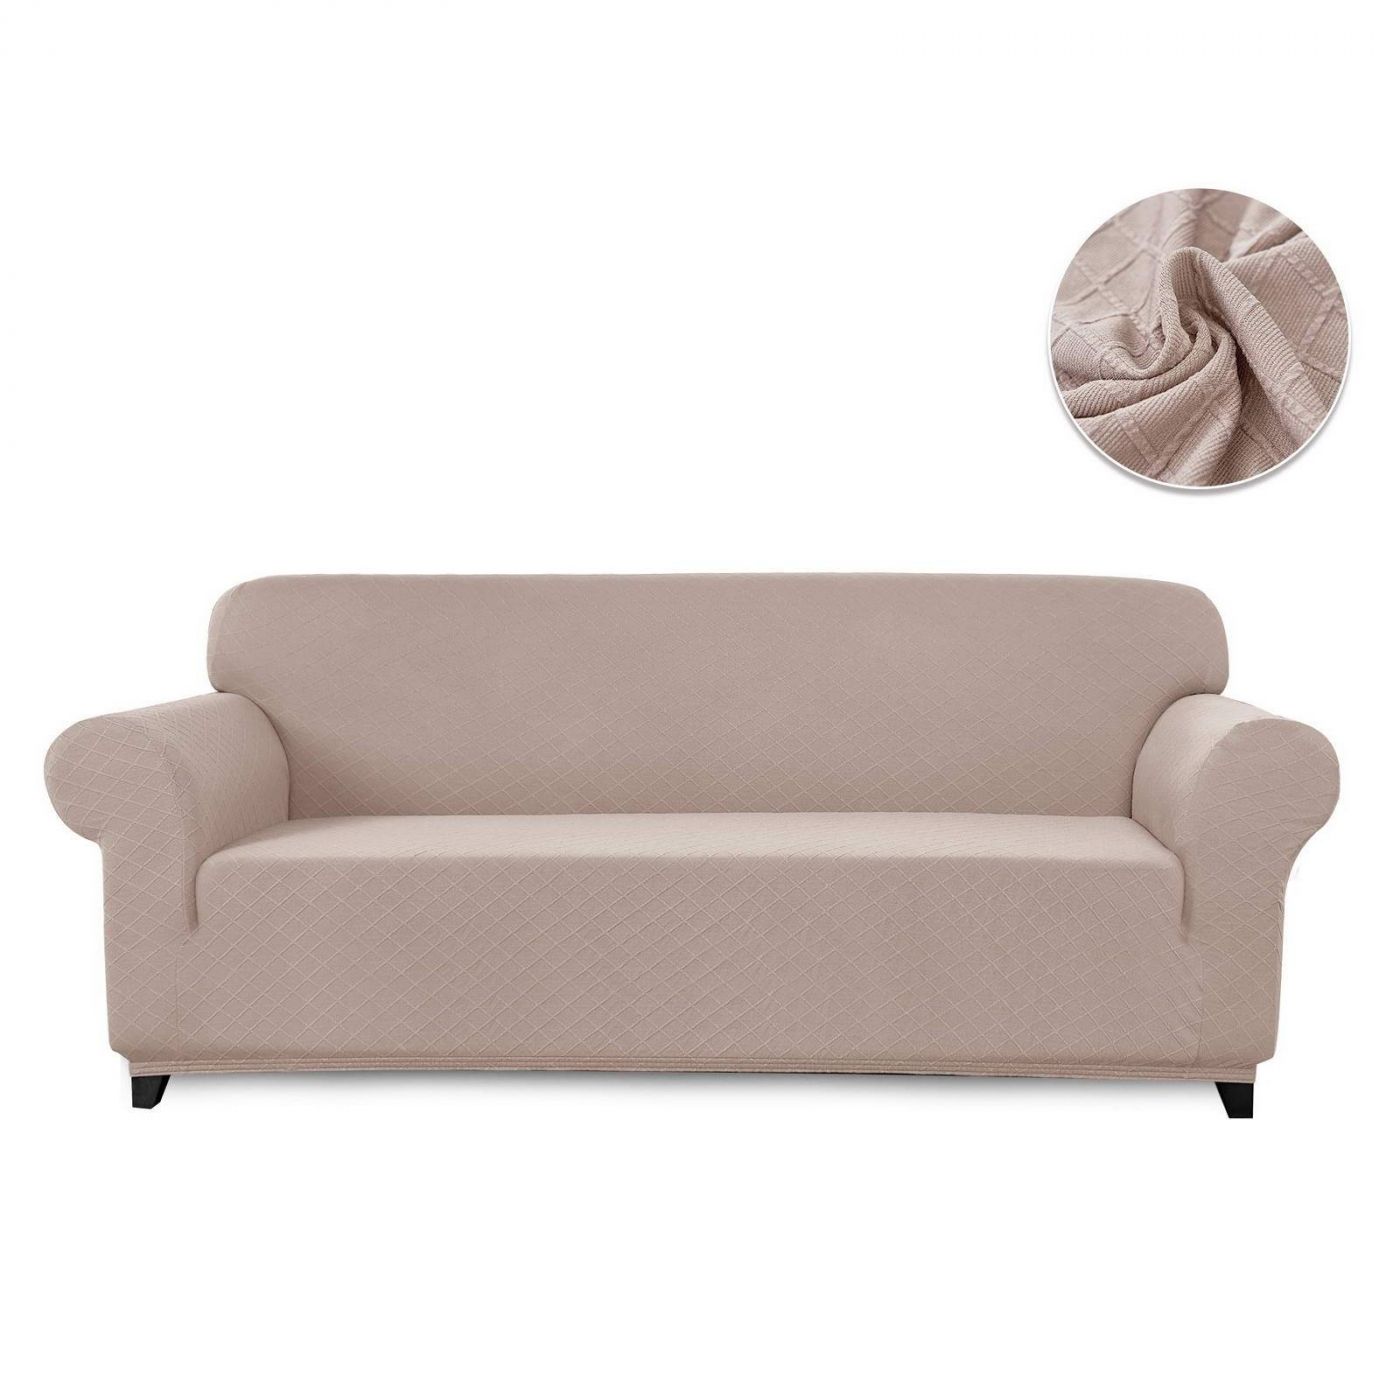 Чехол для дивана Илиана цвет: бежевый (Трехместный), размер Без наволочек sofi881466 Чехол для дивана Илиана цвет: бежевый (Трехместный) - фото 1